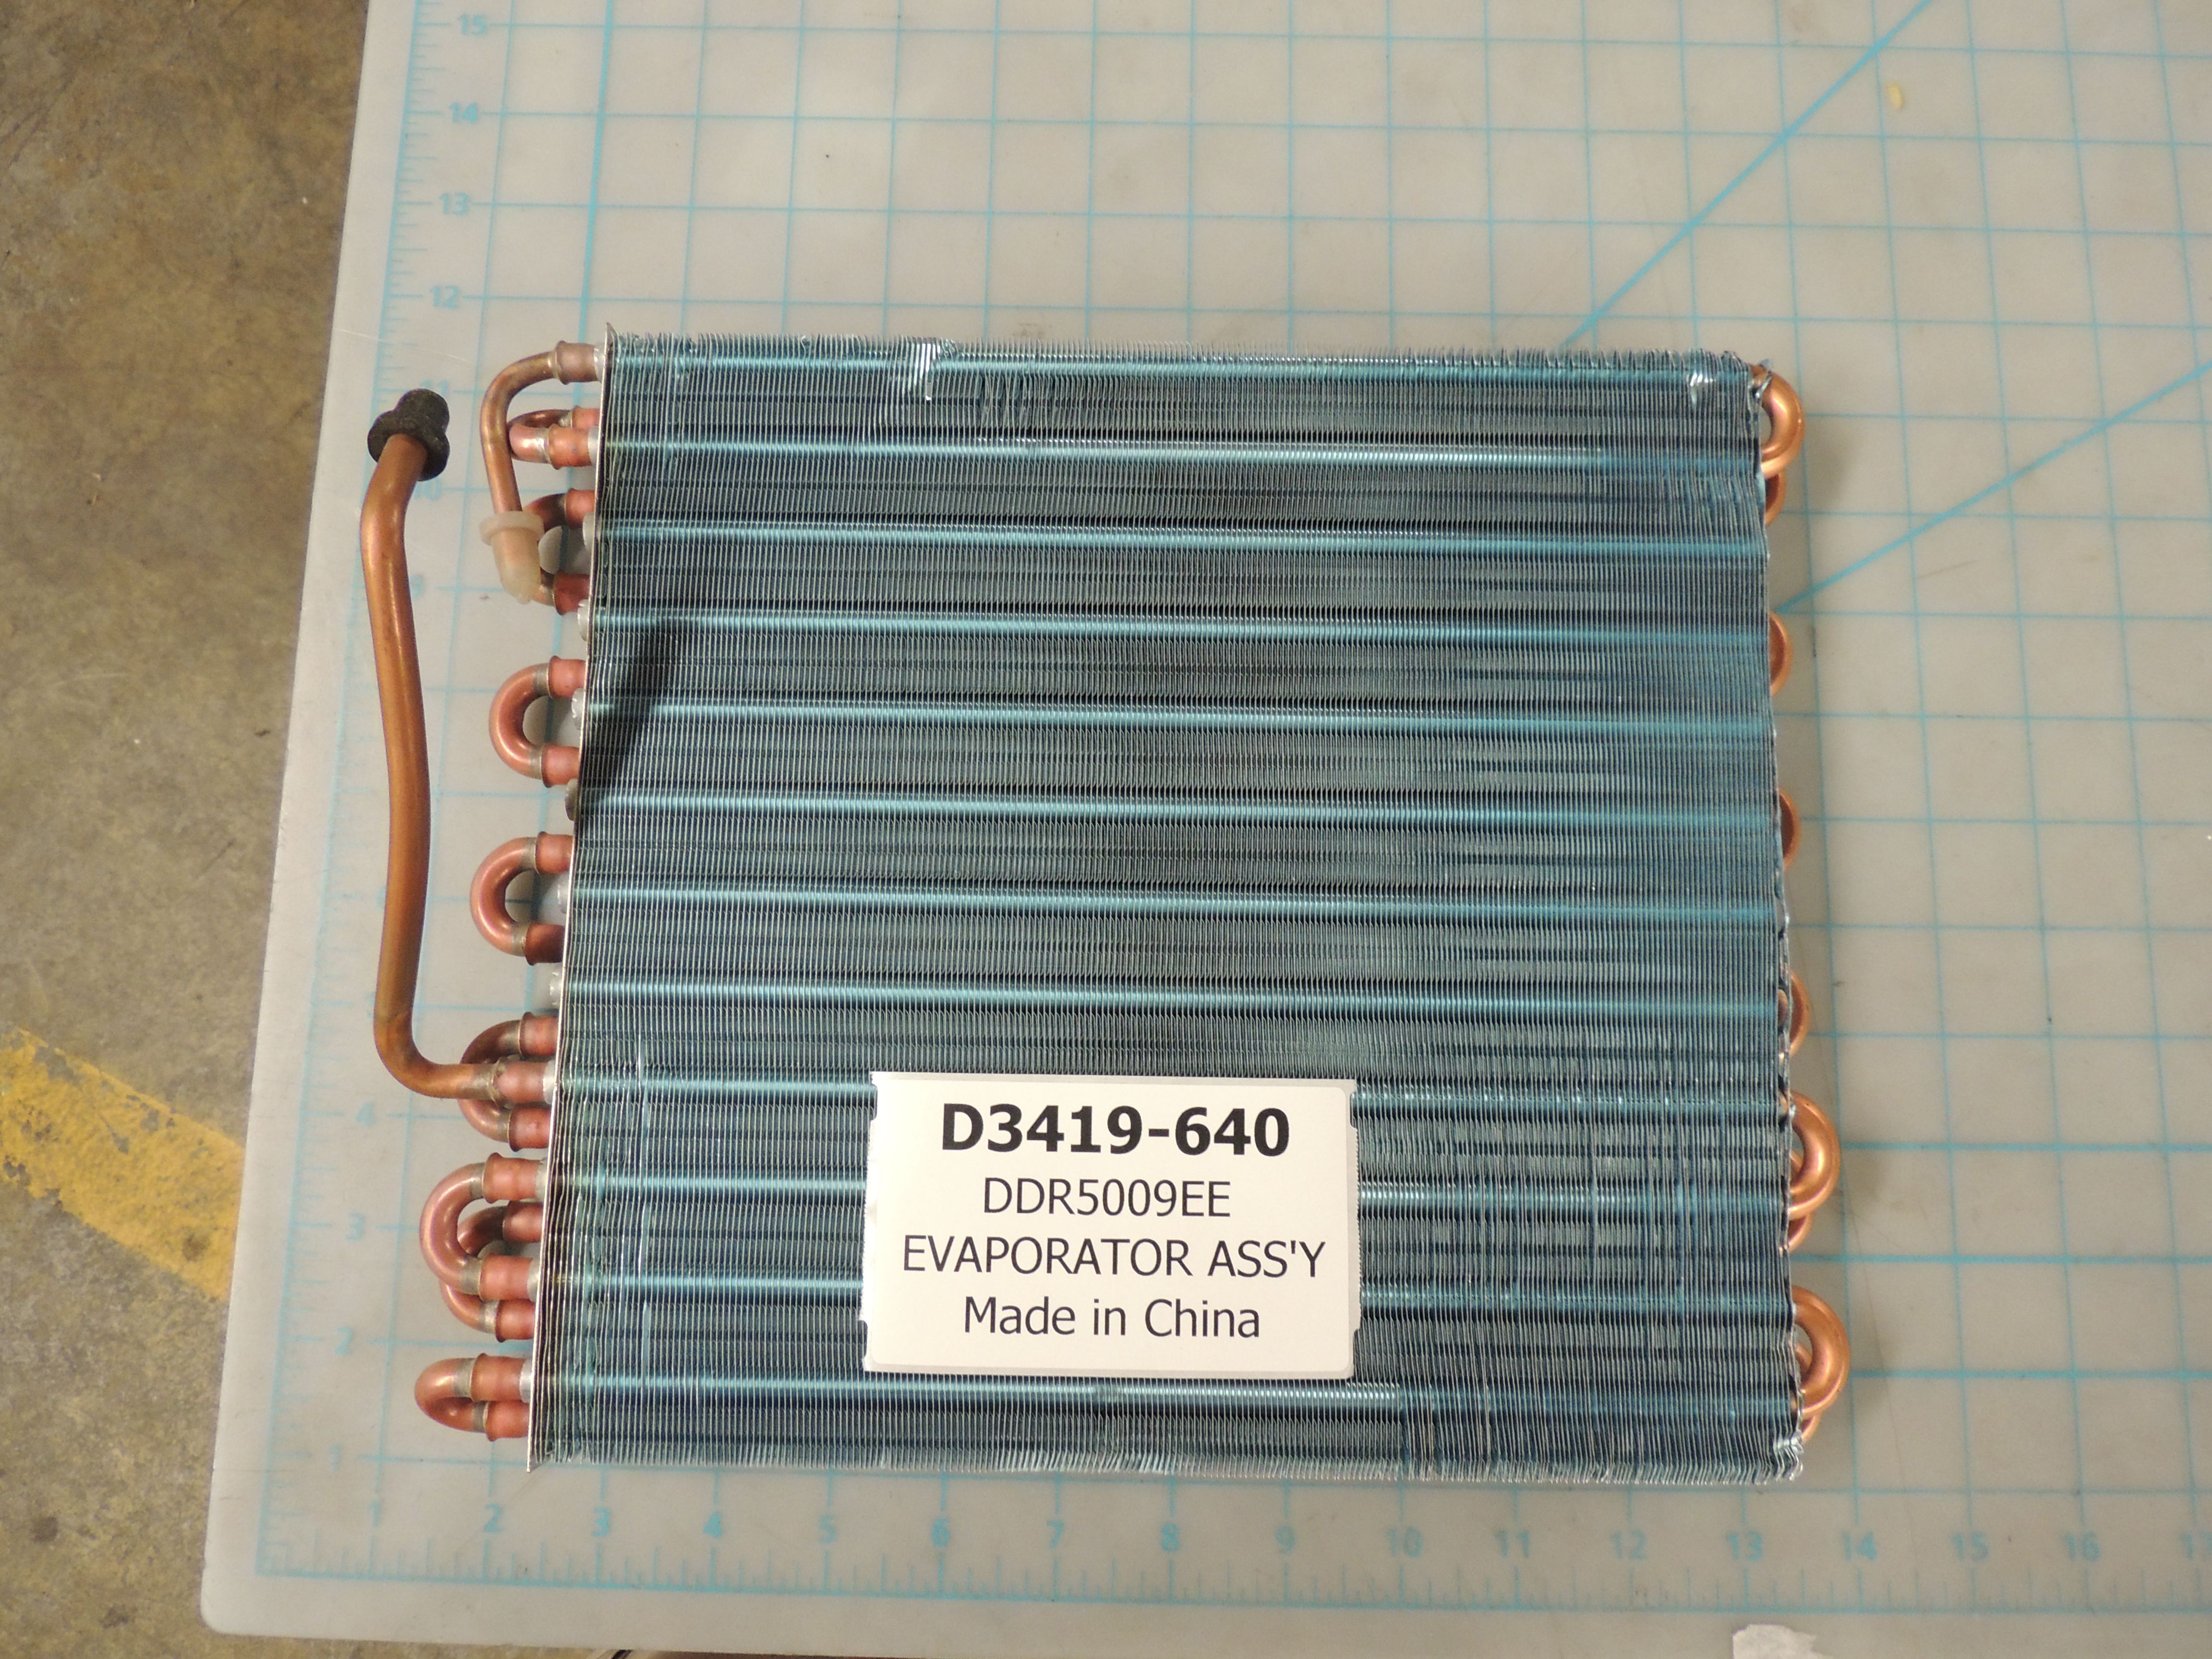 DDR5009EE EVAPORATOR ASS'Y